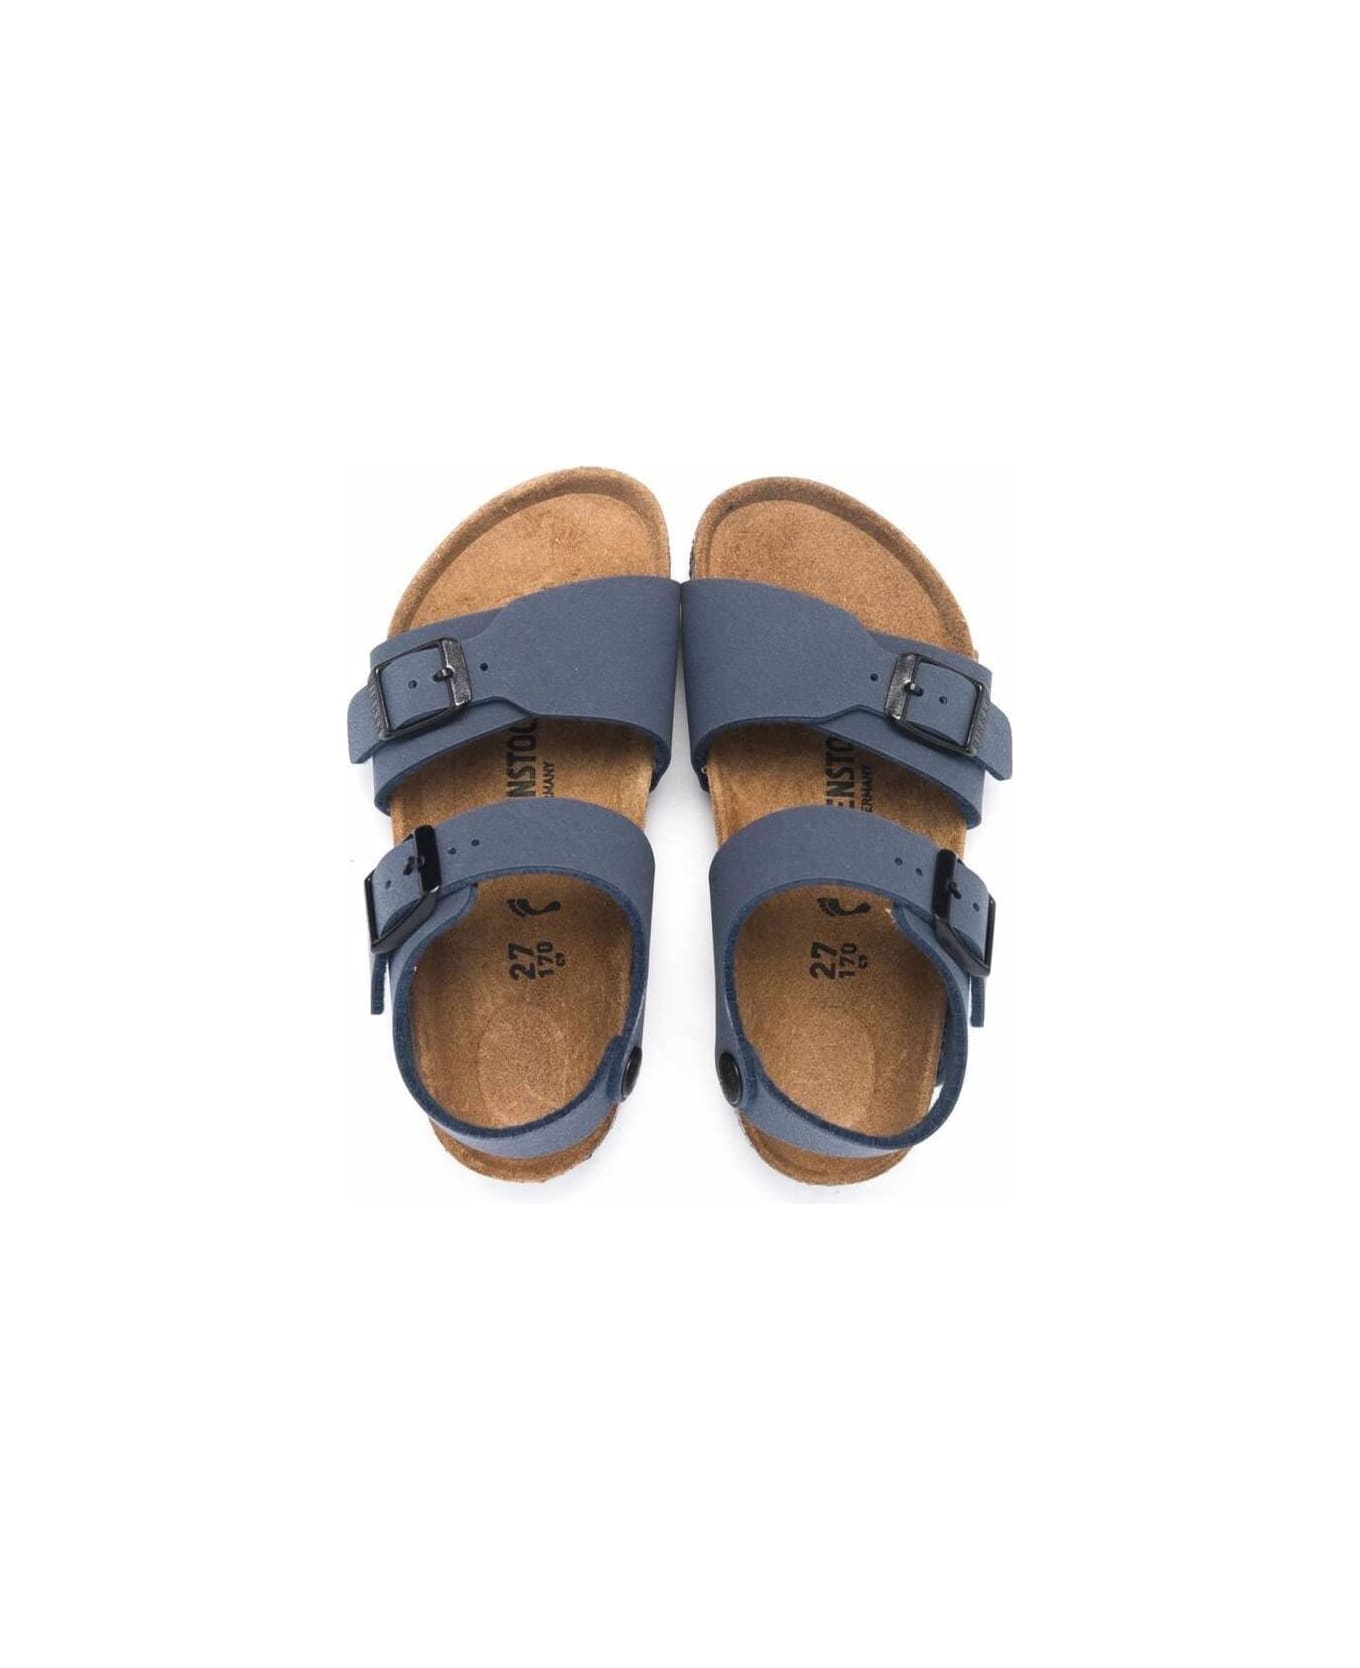 Birkenstock New York Blue Sandals - NAVY